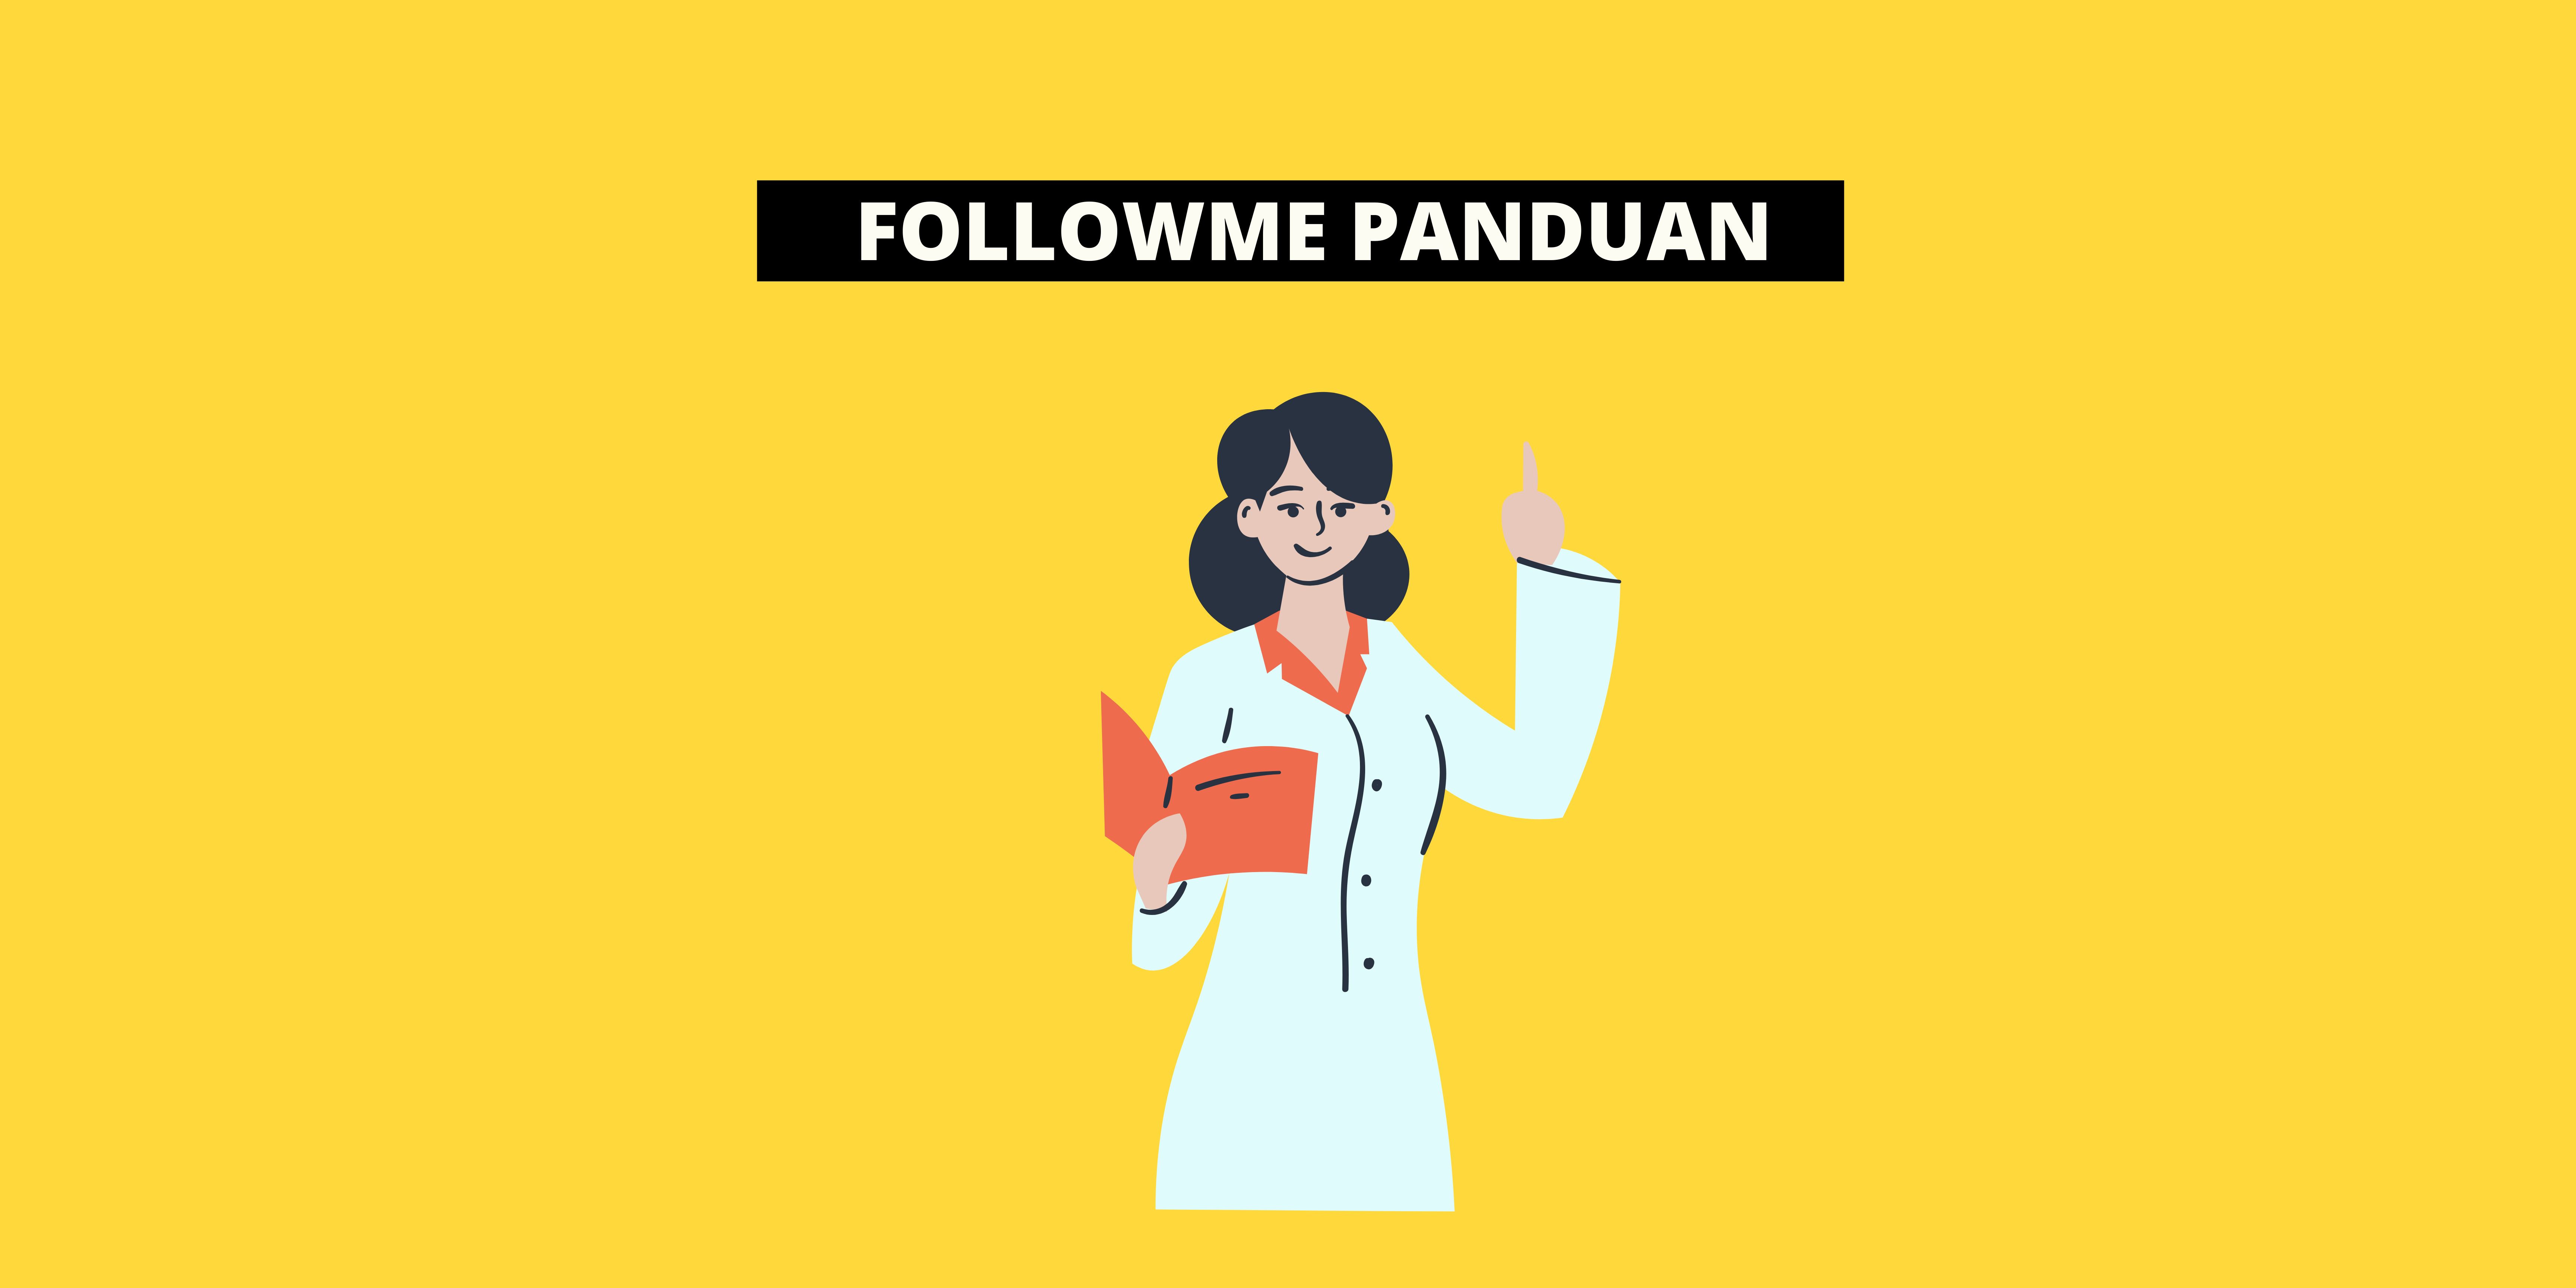 #FollowmePanduan#